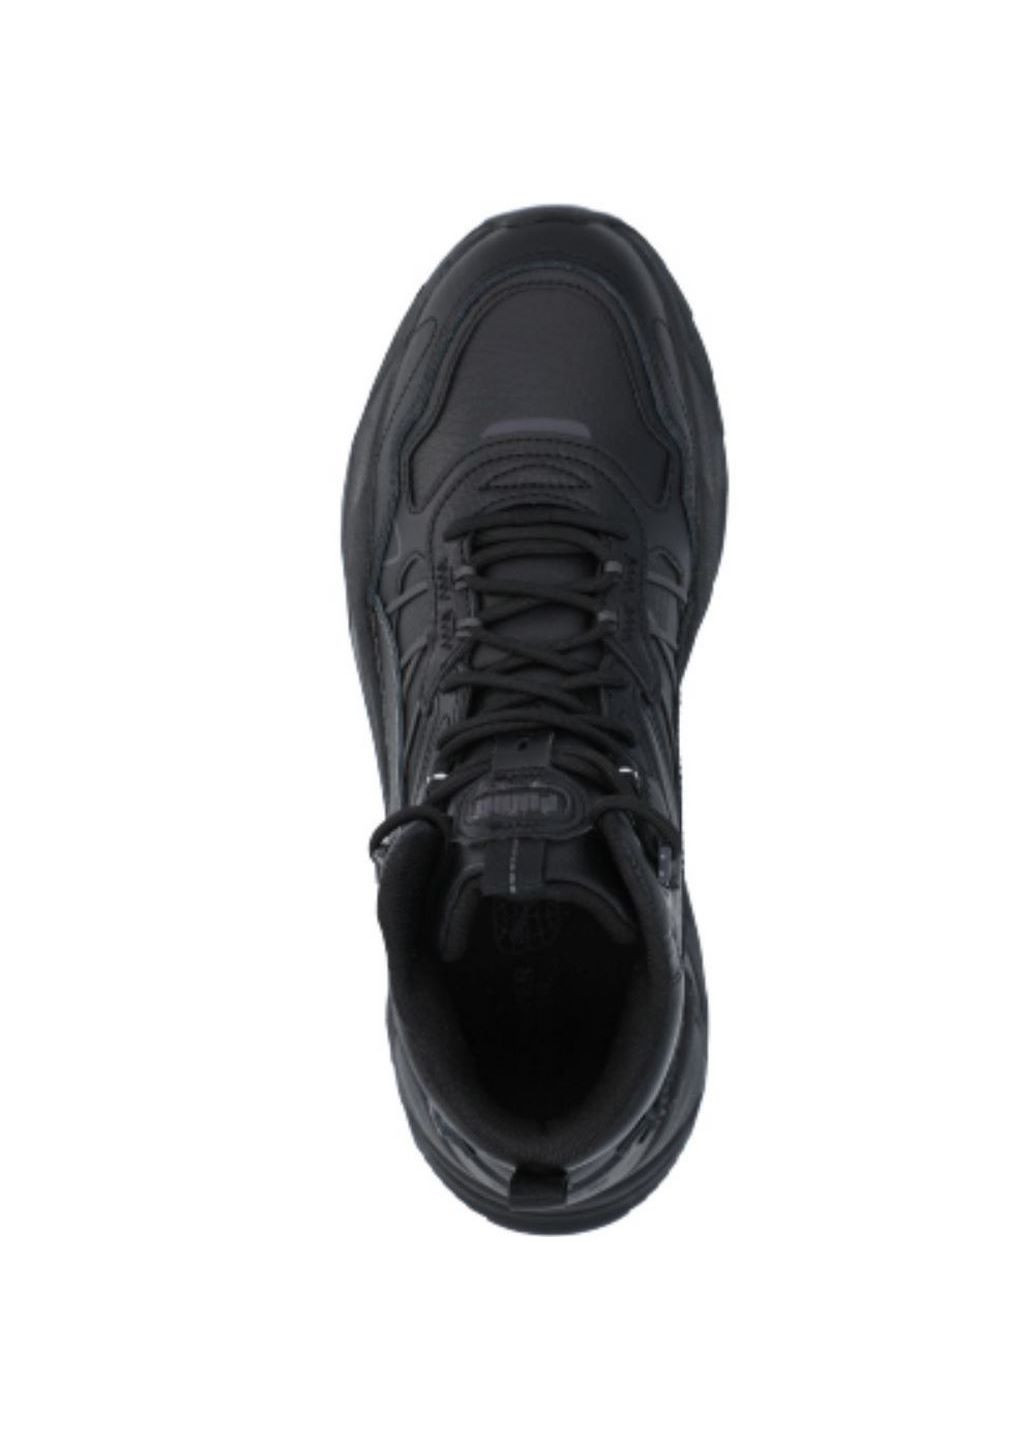 Черные демисезонные мужские кроссовки trinity mid hybrid l 39398503 Puma